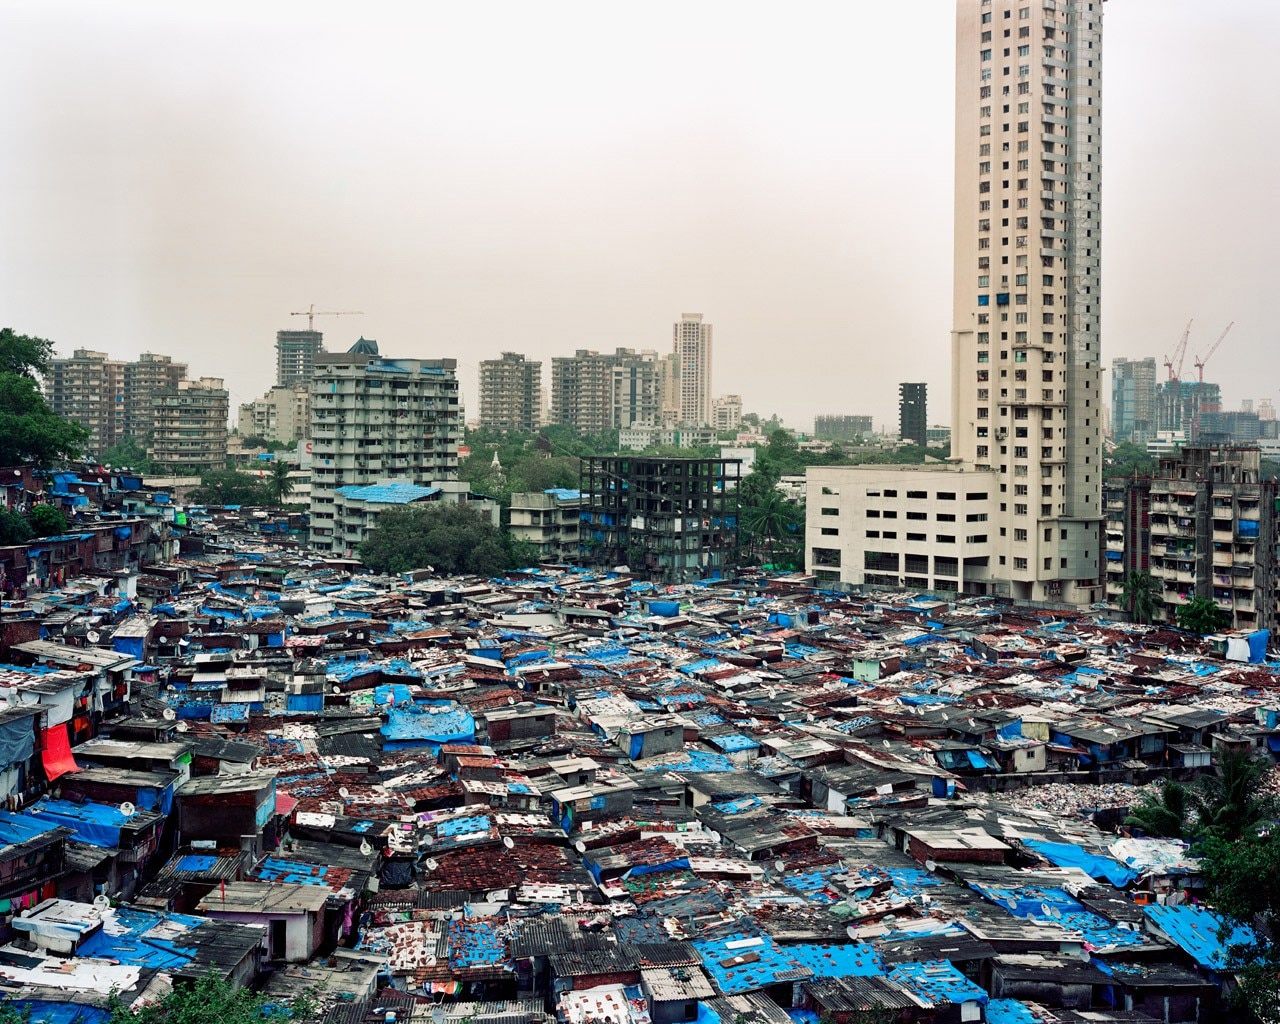 Alicja Dobrucka, Life is on a new high, Mumbai